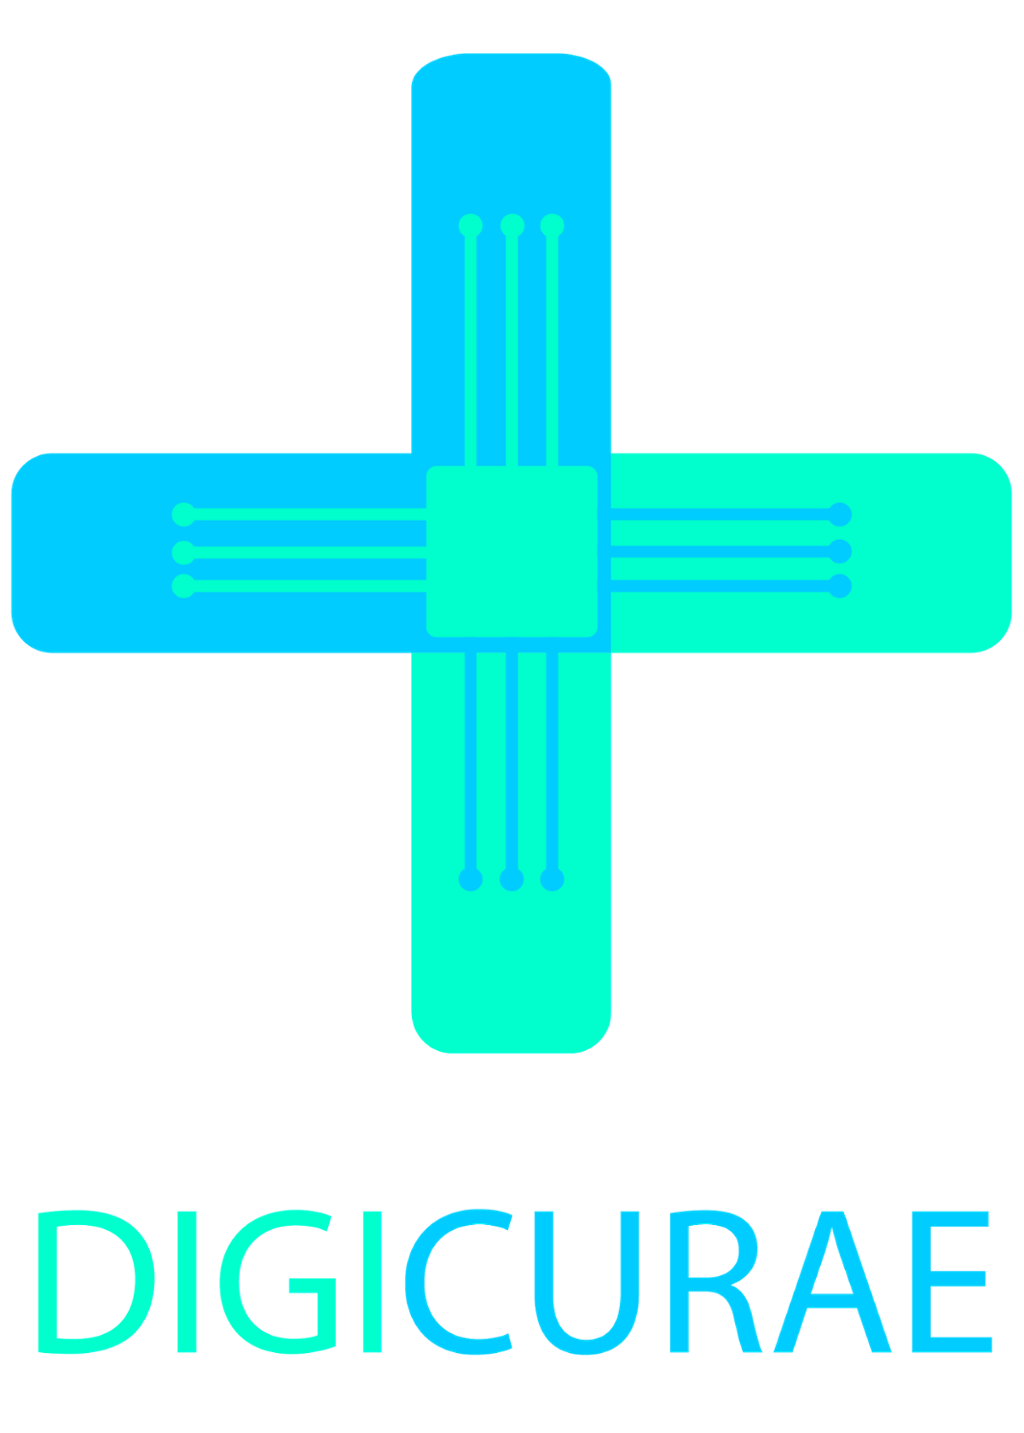 Logo utformet som et kryss med firmanavnet Digicurae under. Illustrasjon.